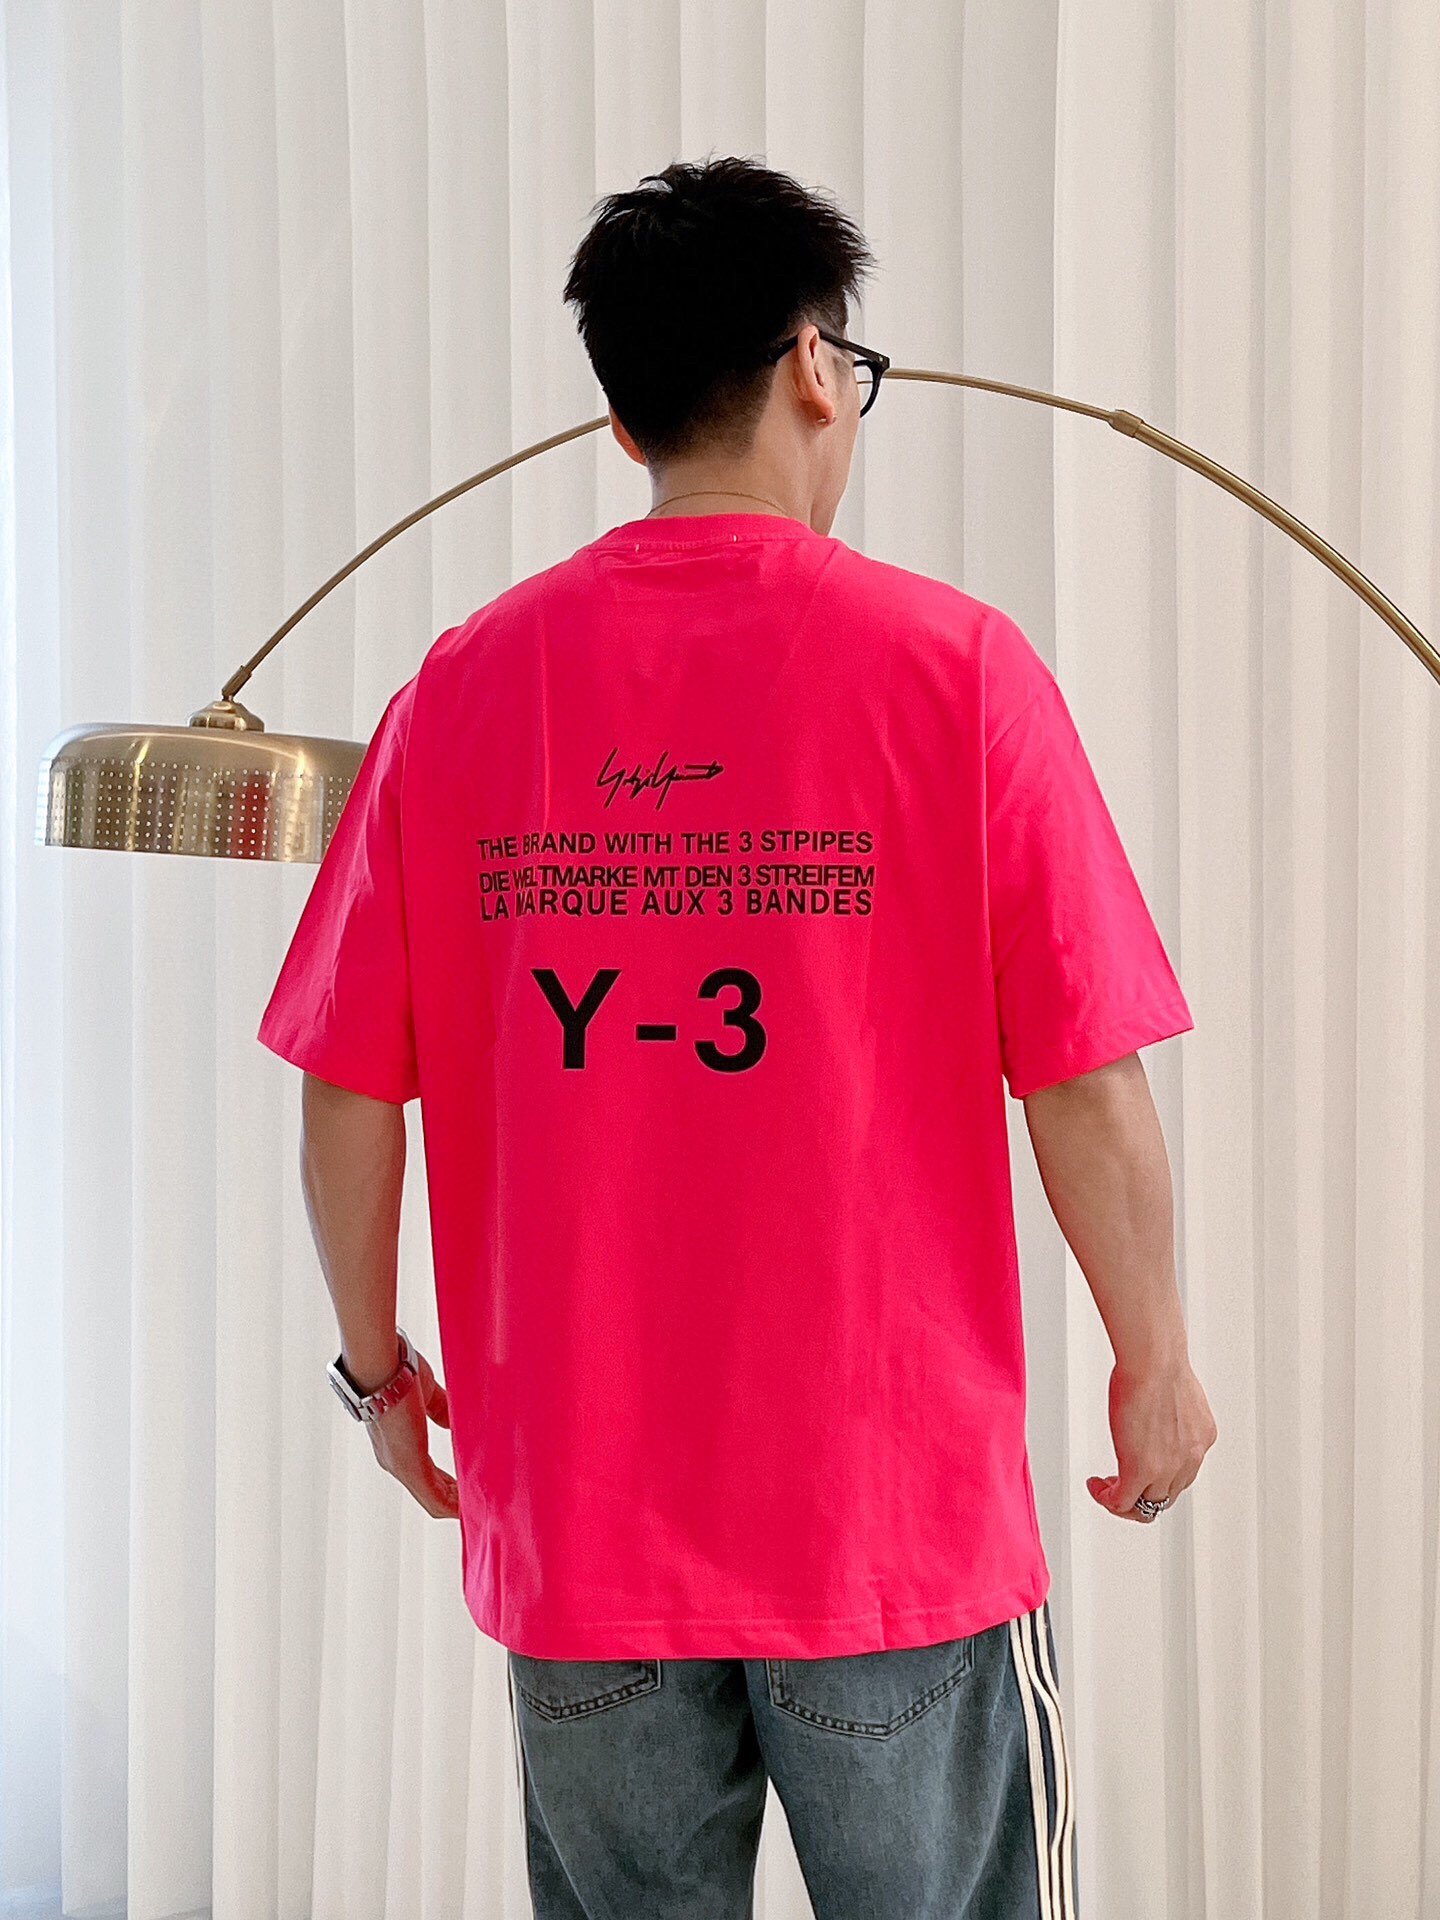 新款短袖T恤拼接设计迎来这一季的销量榜首冠军首位Yamamoto擅长的前卫美学和对于运动科技的专长在这件